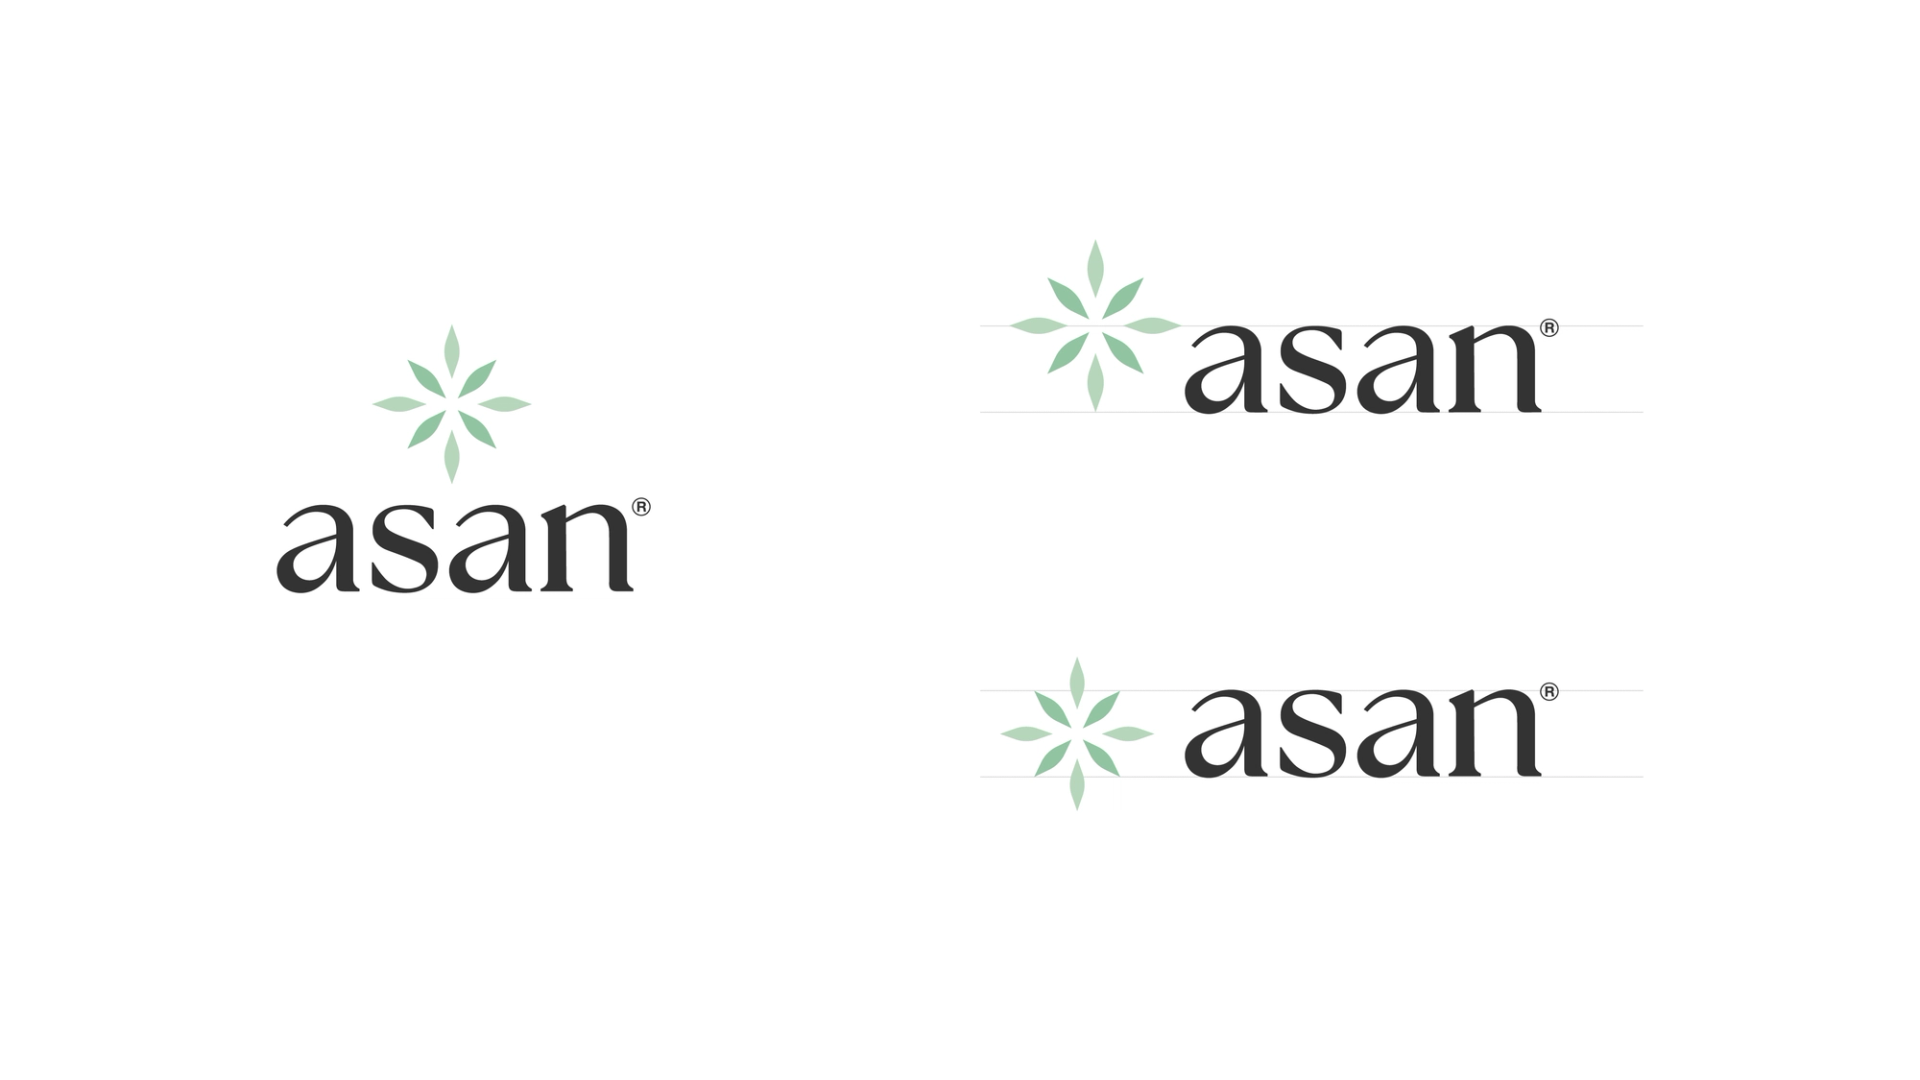 Asan navnetrekk og symbol